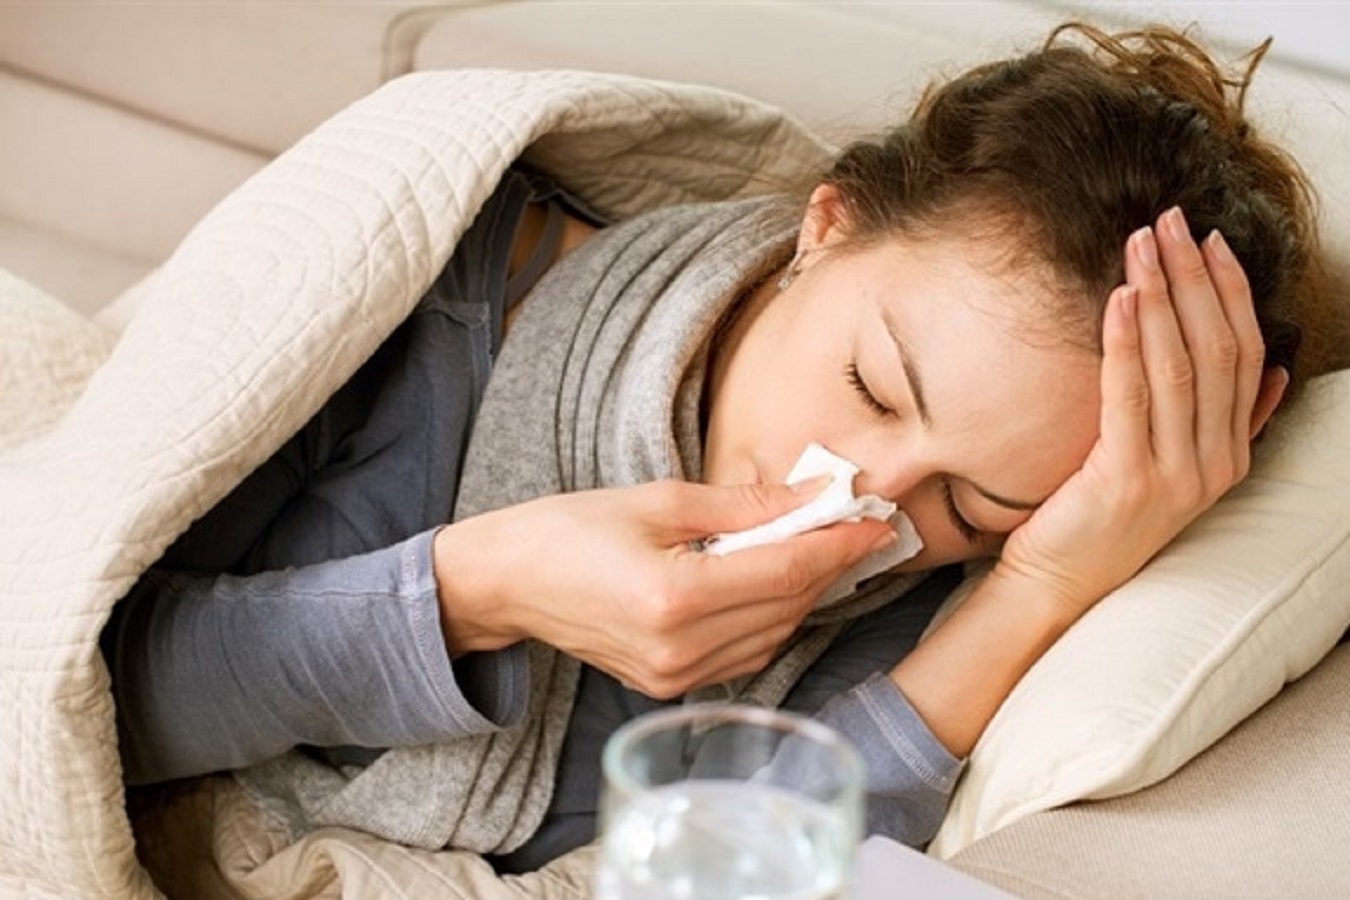 Latest News on Flu